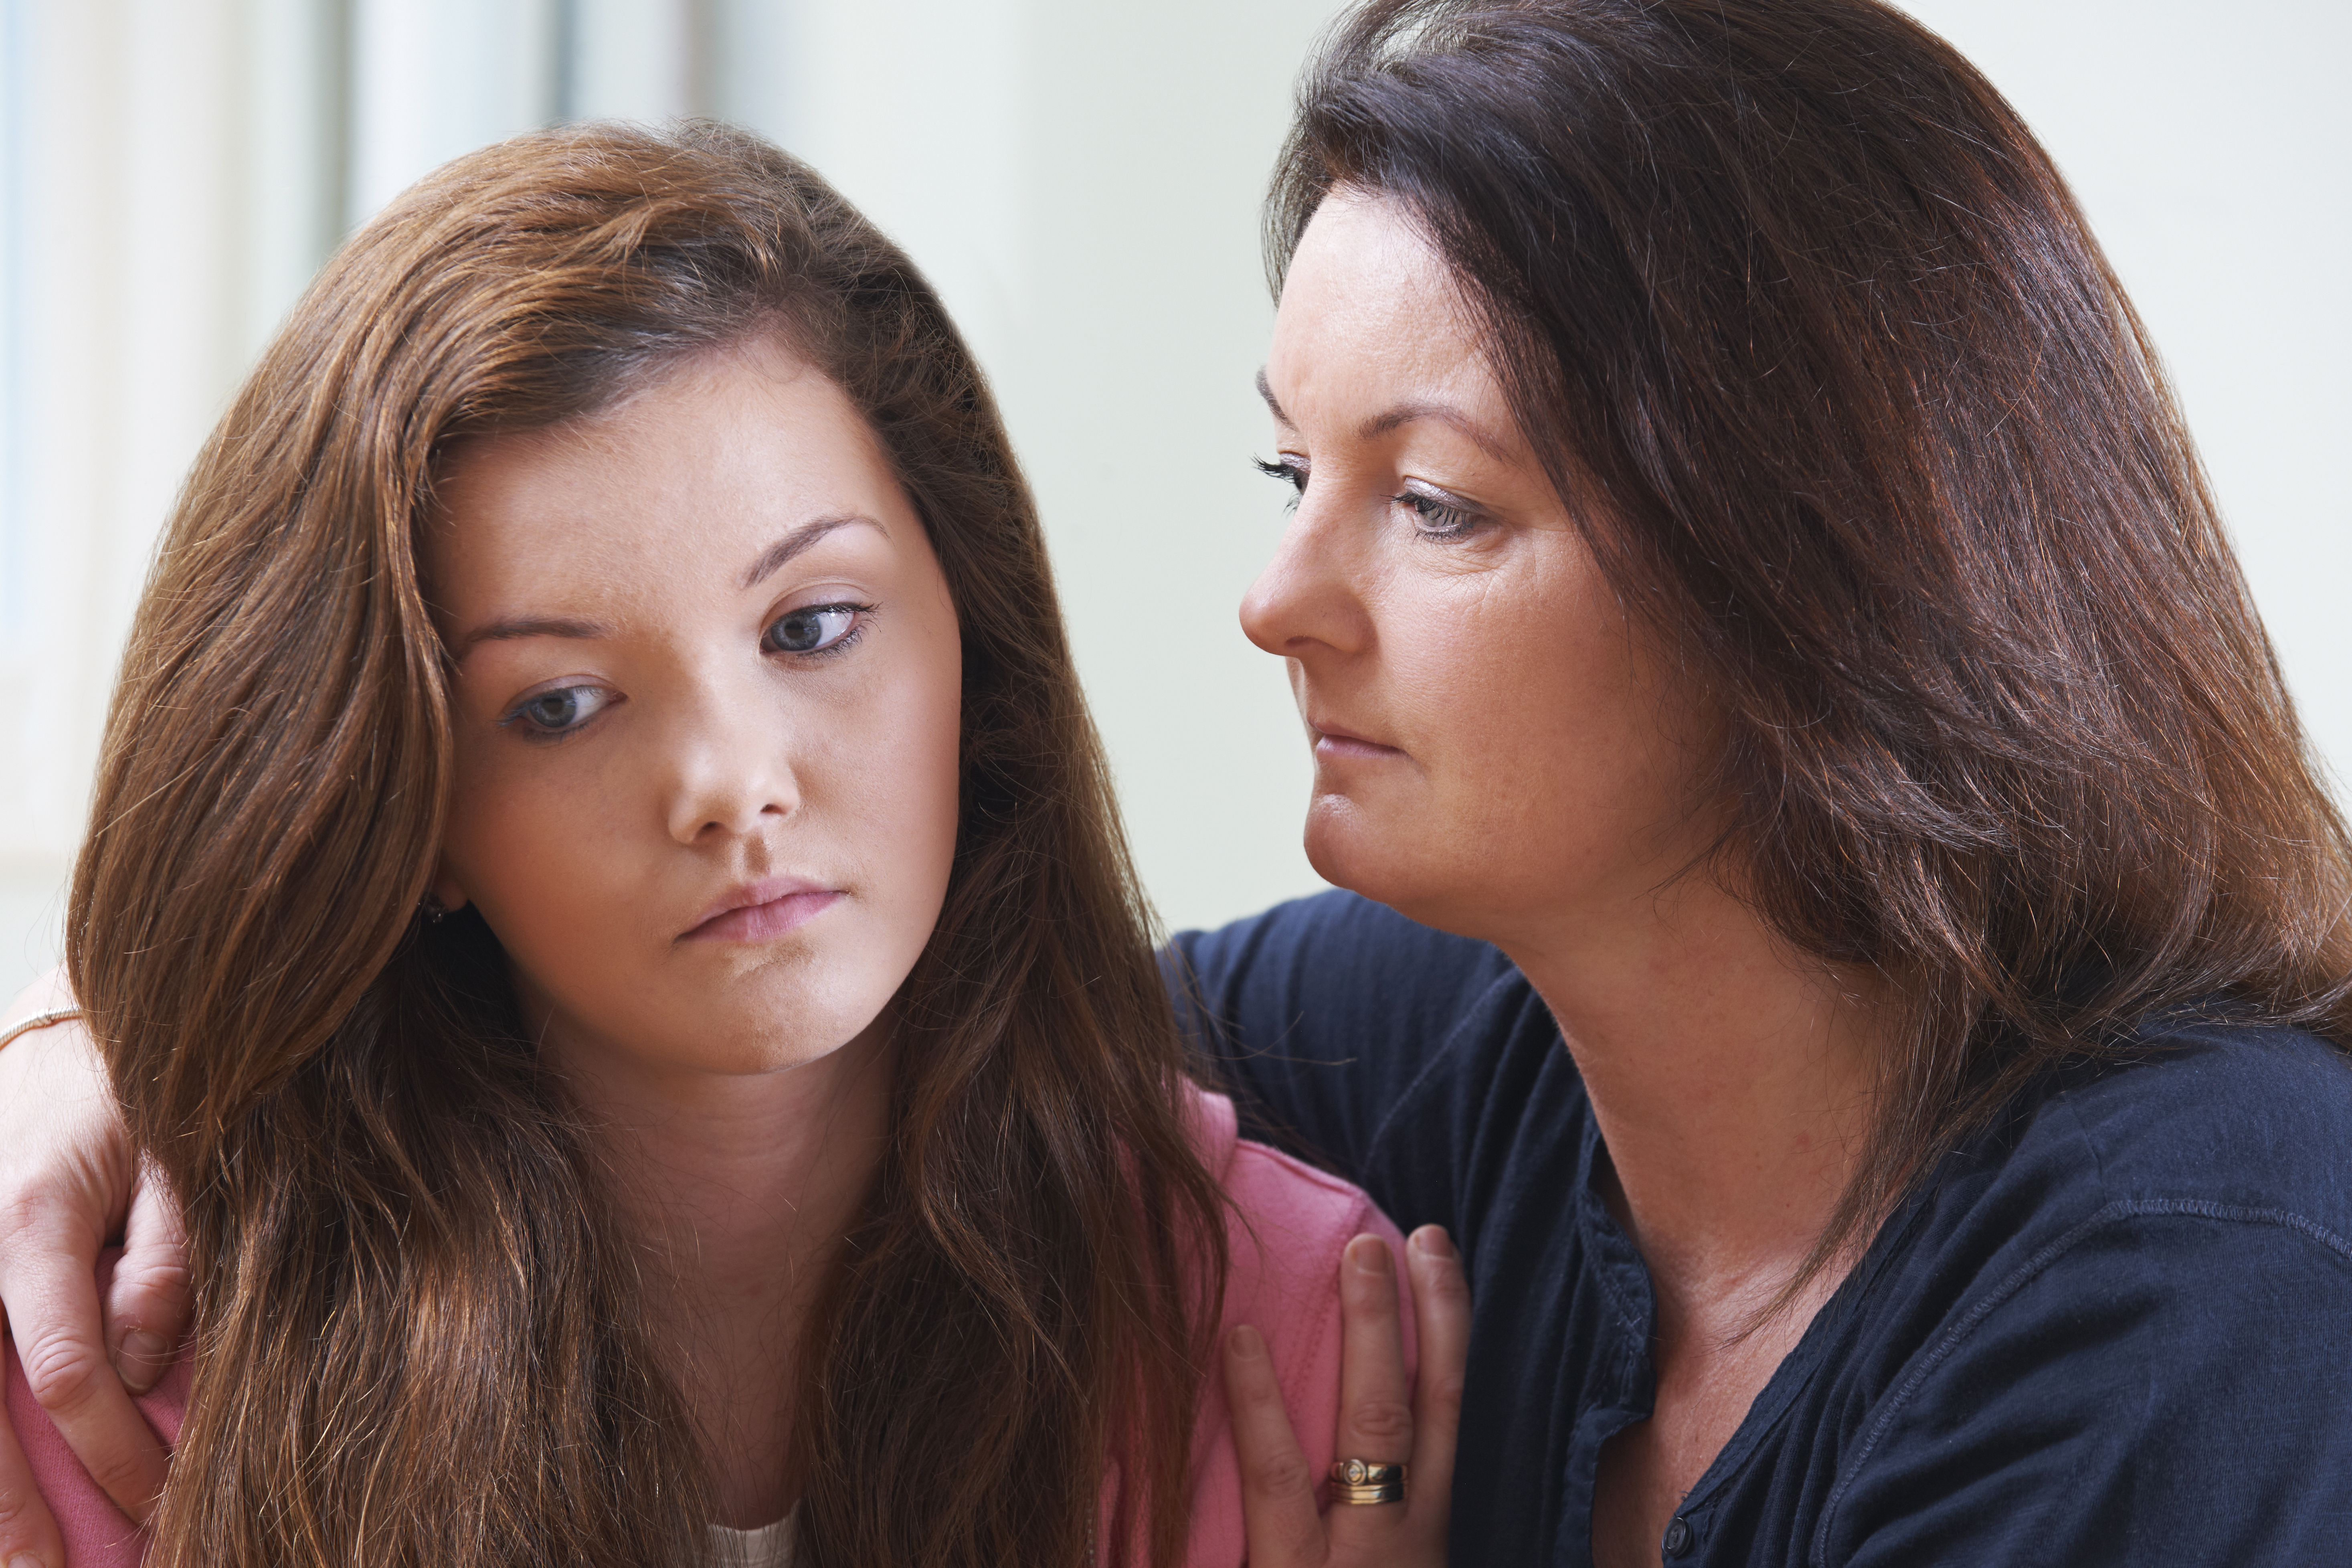 Madre consolando a su hija adolescente | Foto: Shutterstock